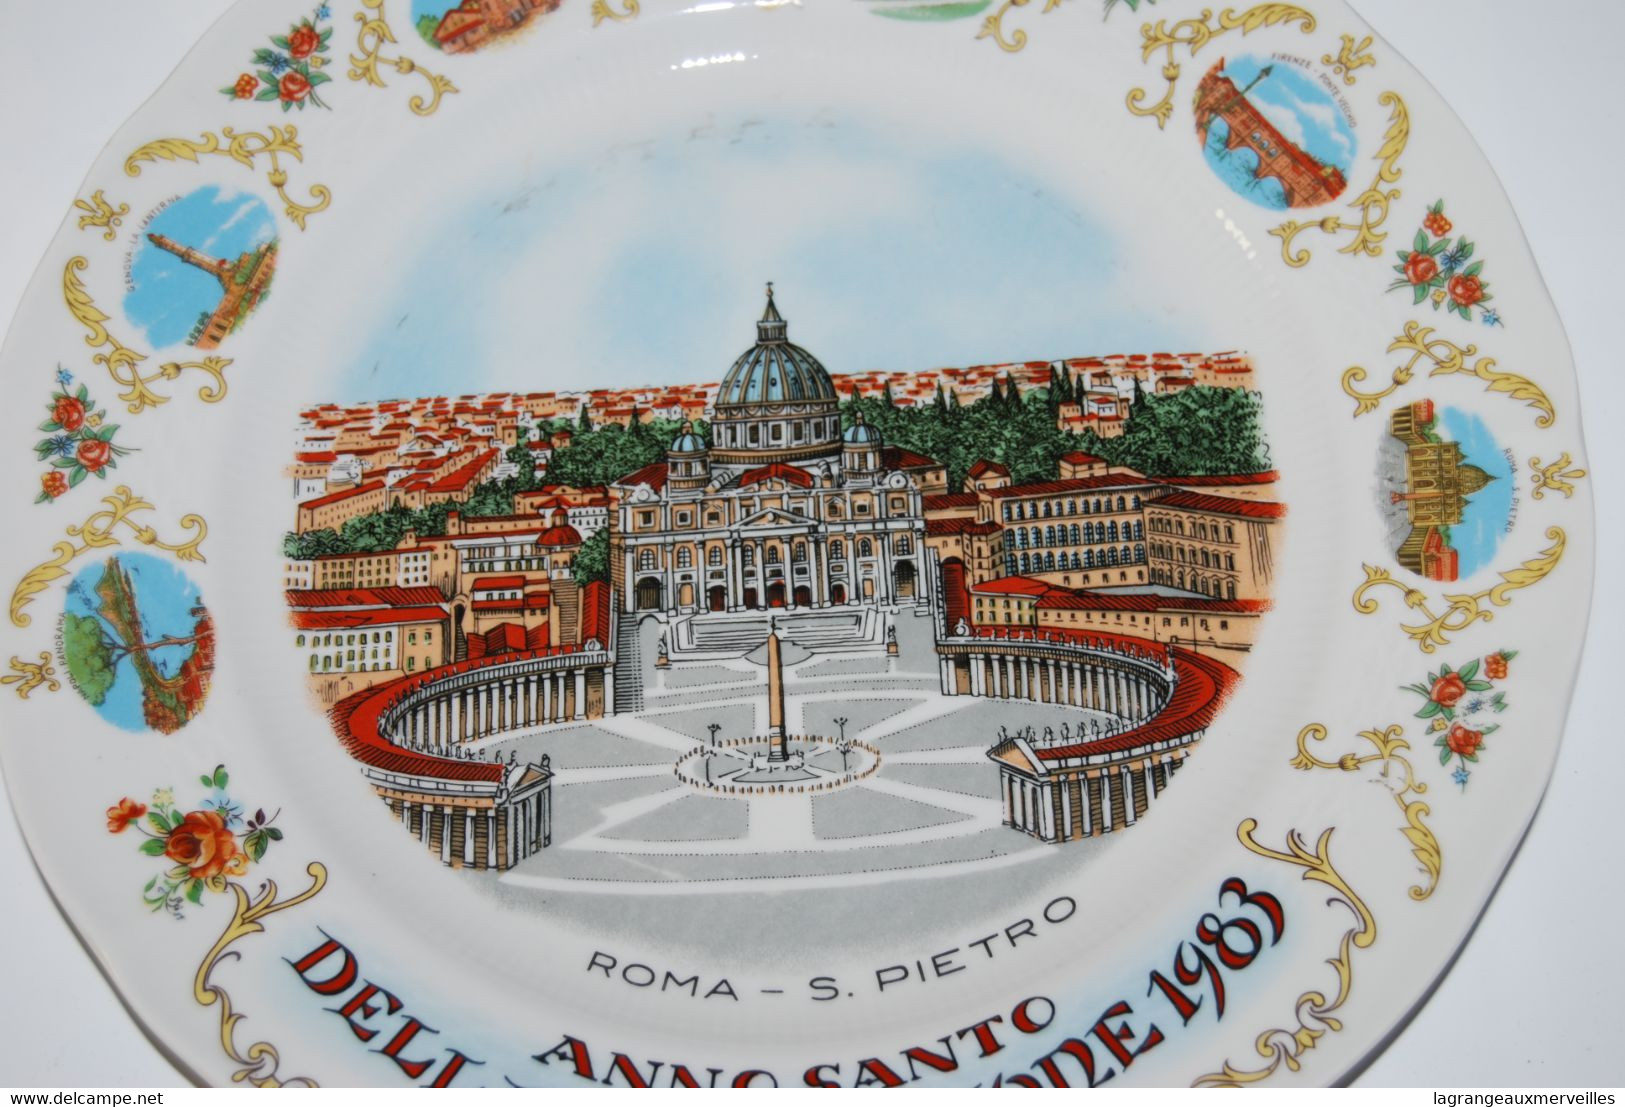 E2 Objet de dévotion - Assiette souvenir - Roma St Pietro